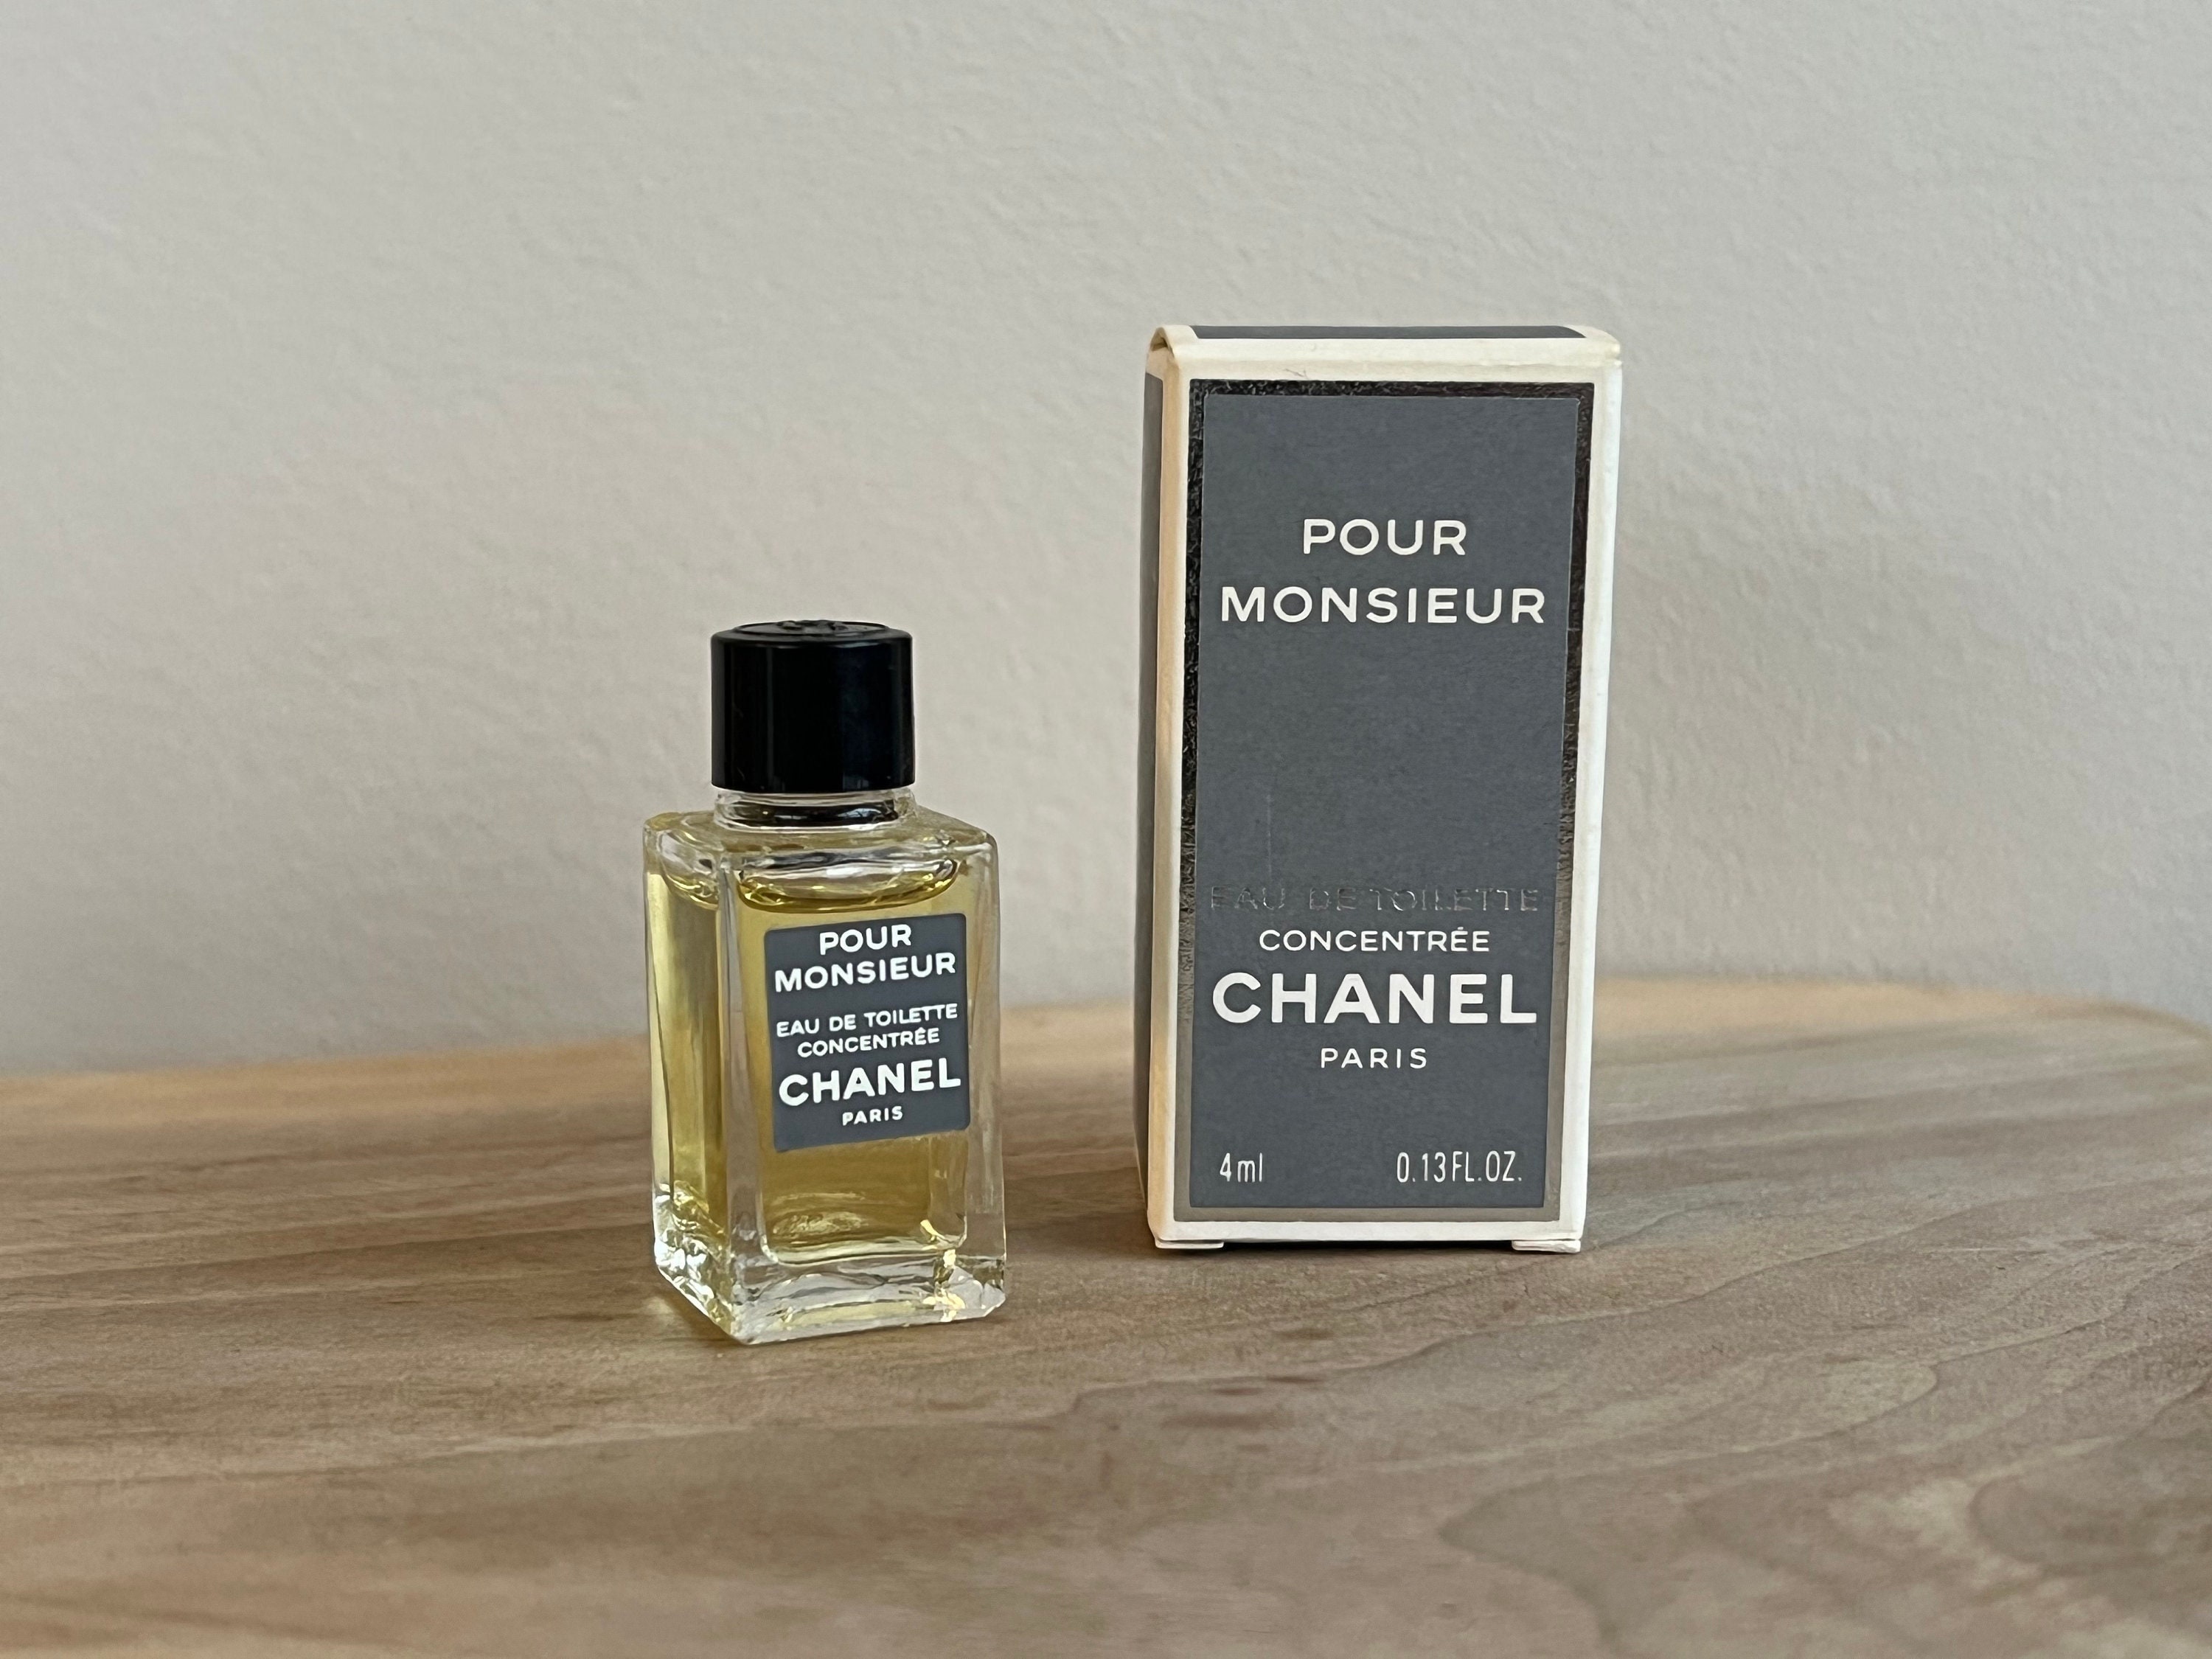 CHANEL+Les+Exclusifs+1957+Eau+De+Parfum+75+Ml for sale online